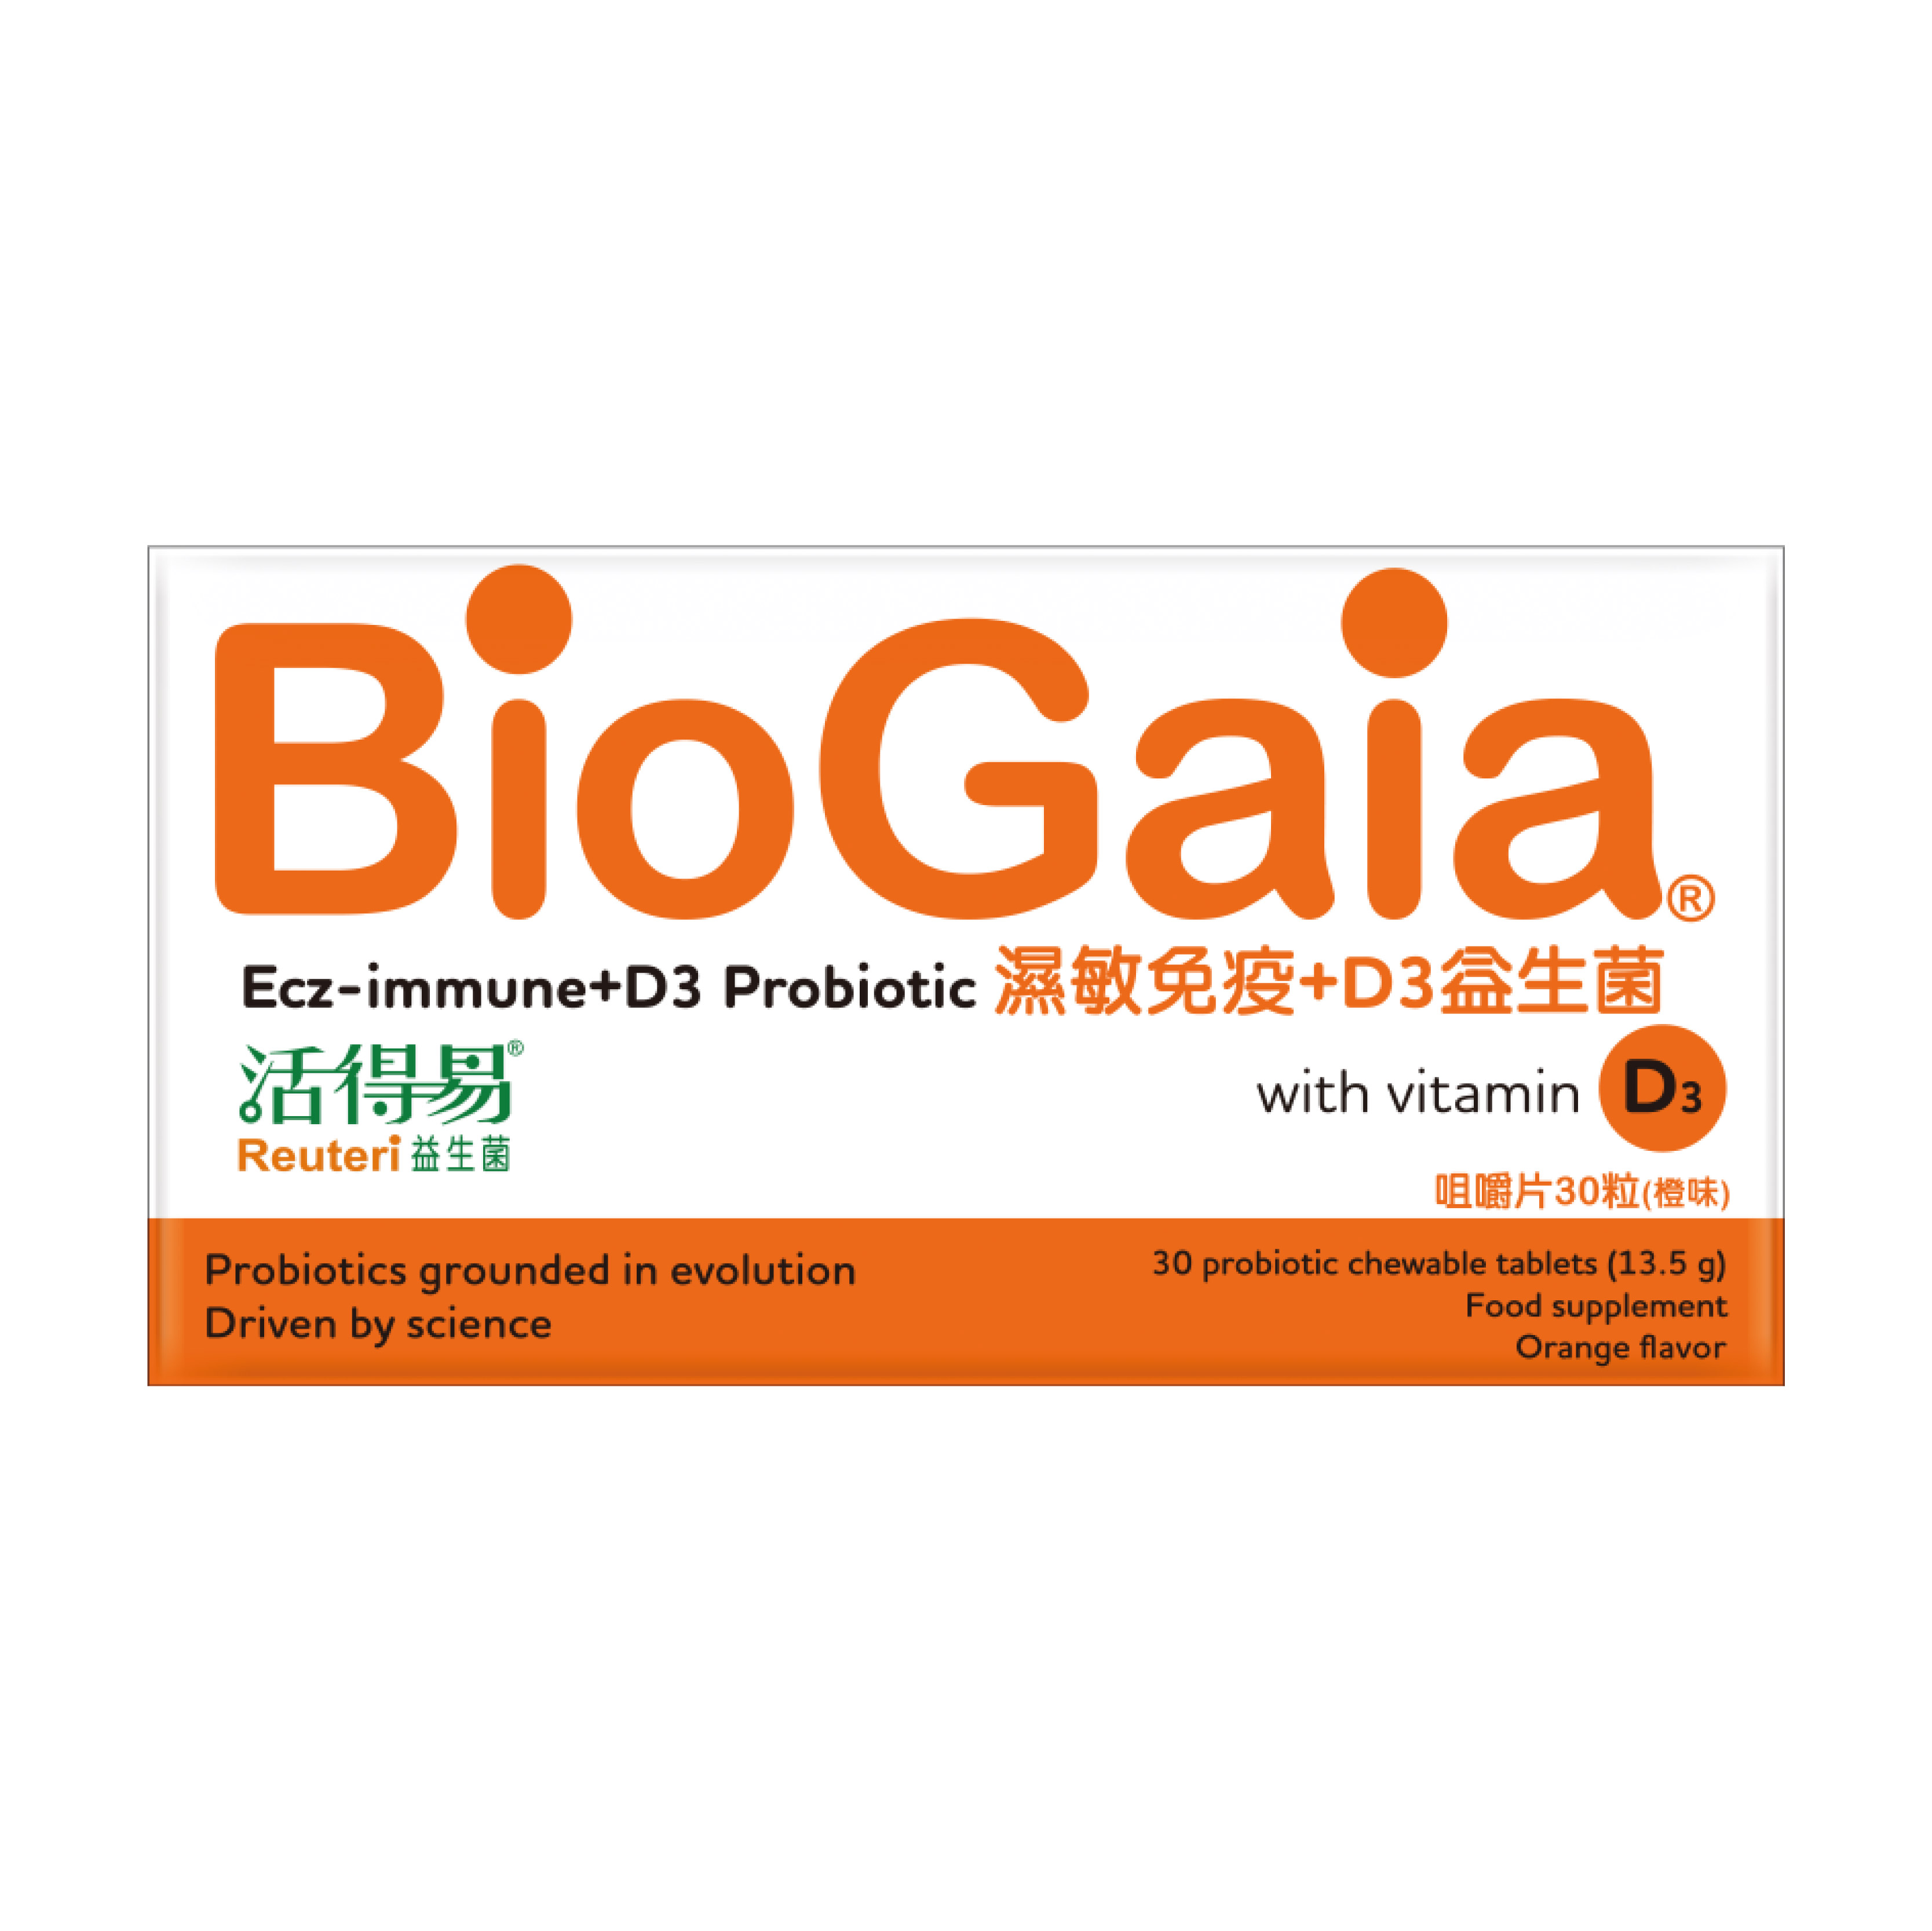 BioGaia Reuteri Ecz-immune + D3 Probiotic